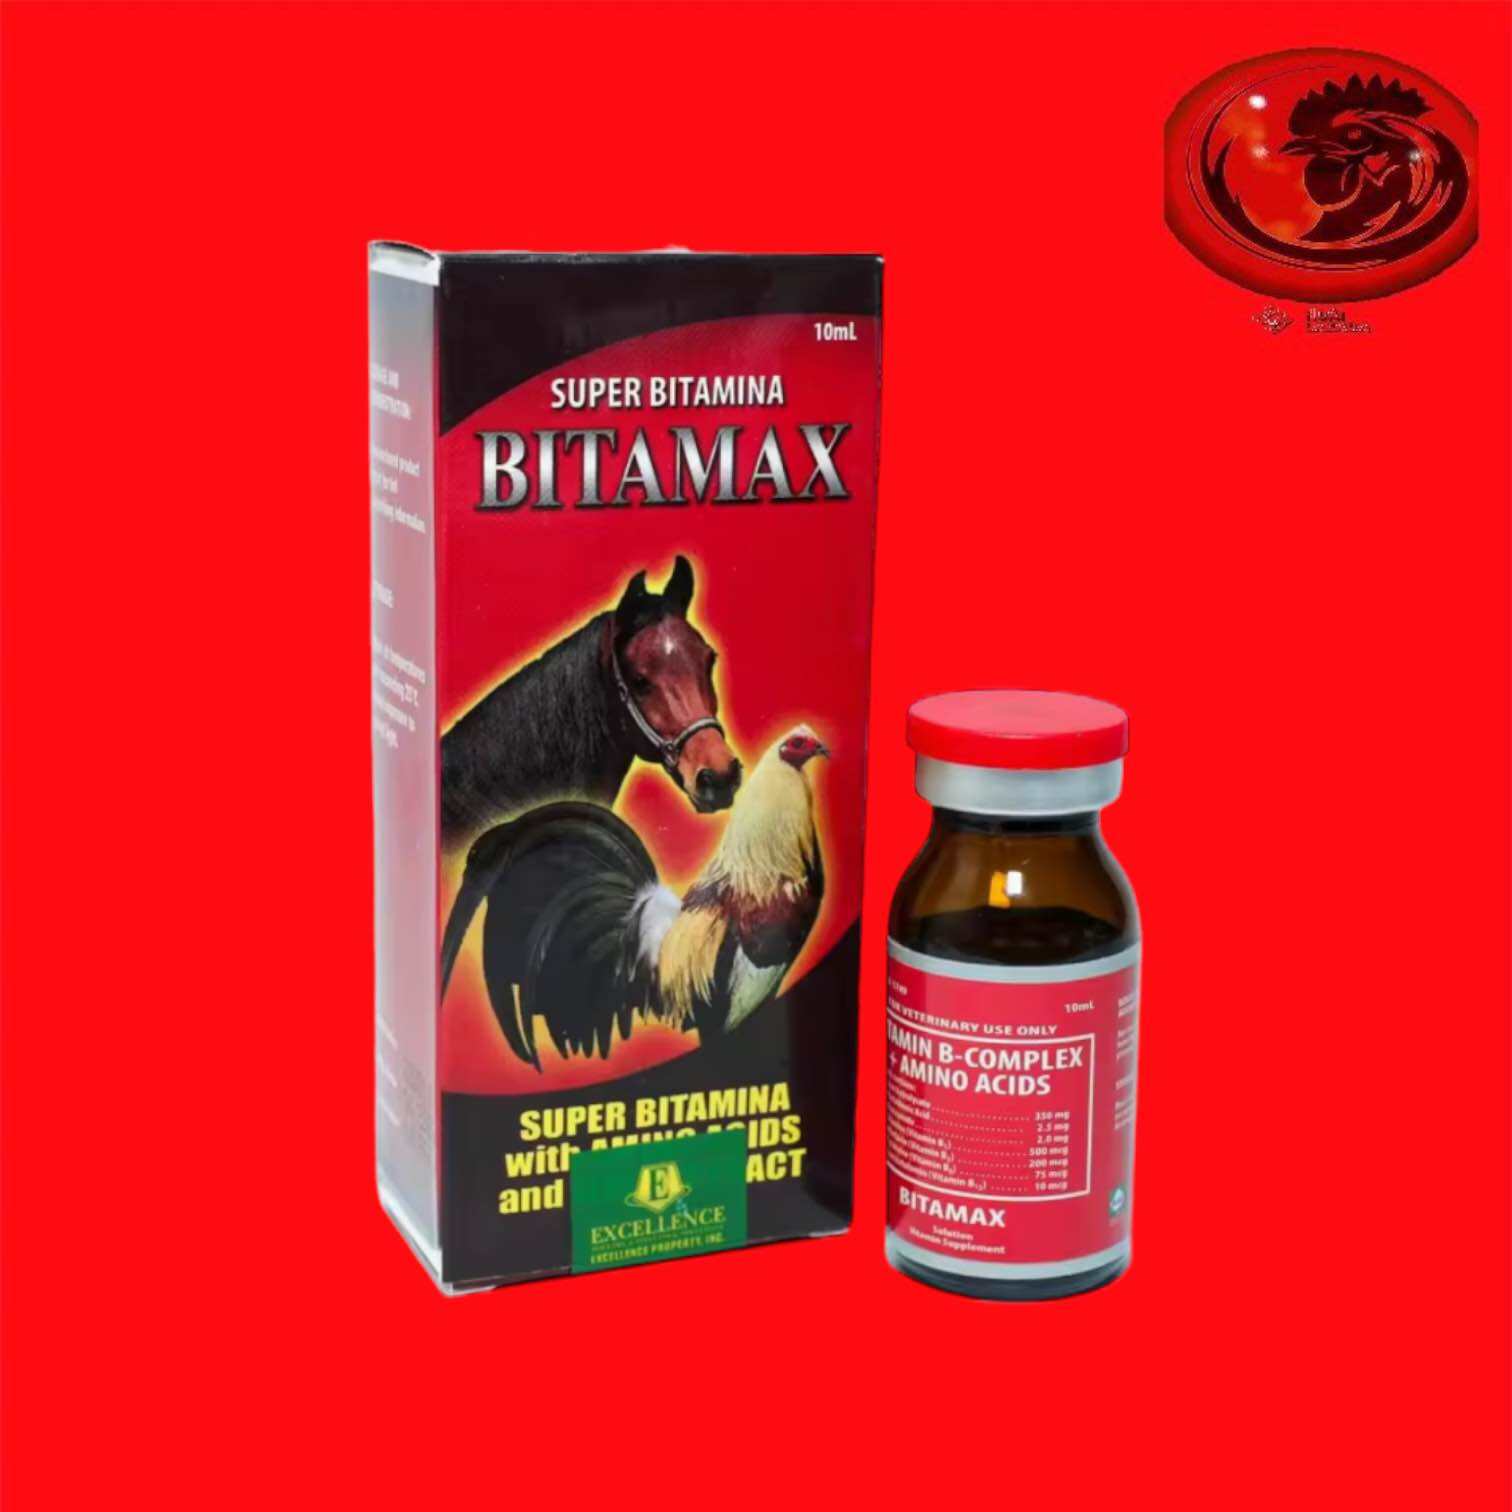 Thuốc Bổ B-Complex - Bitamax - Chai 10ml cho gà đá